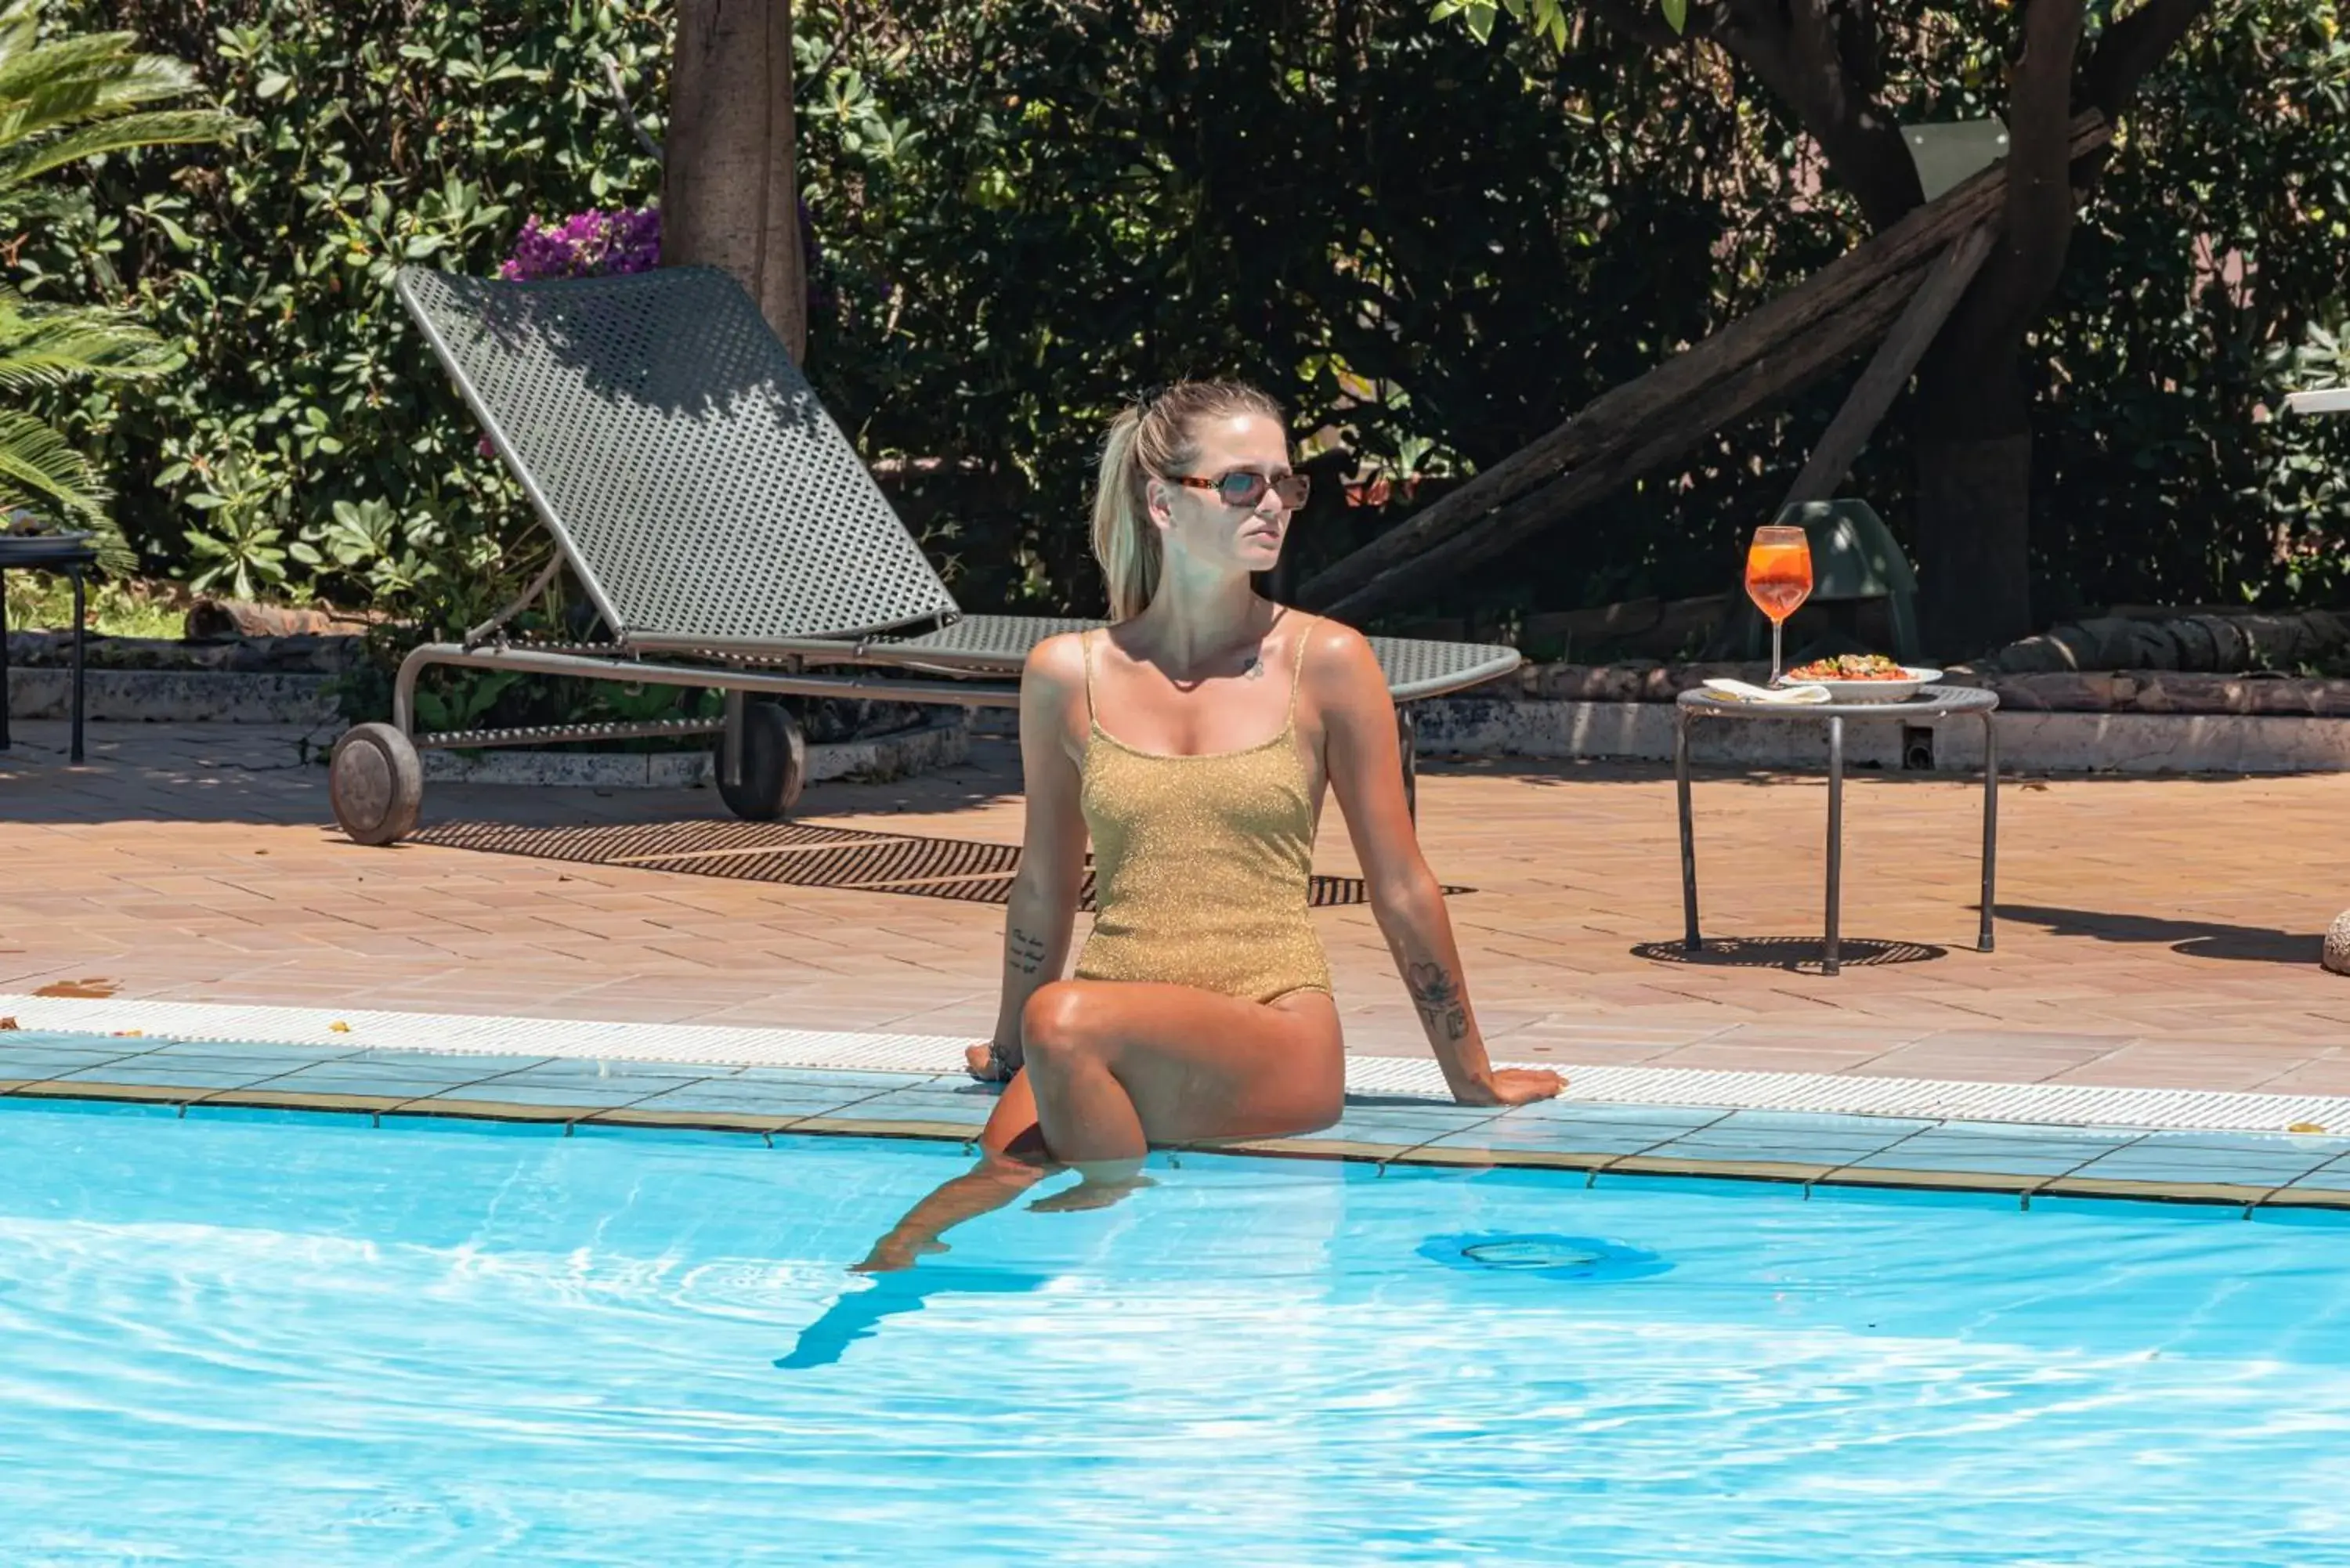 Swimming Pool in Aequa Hotel